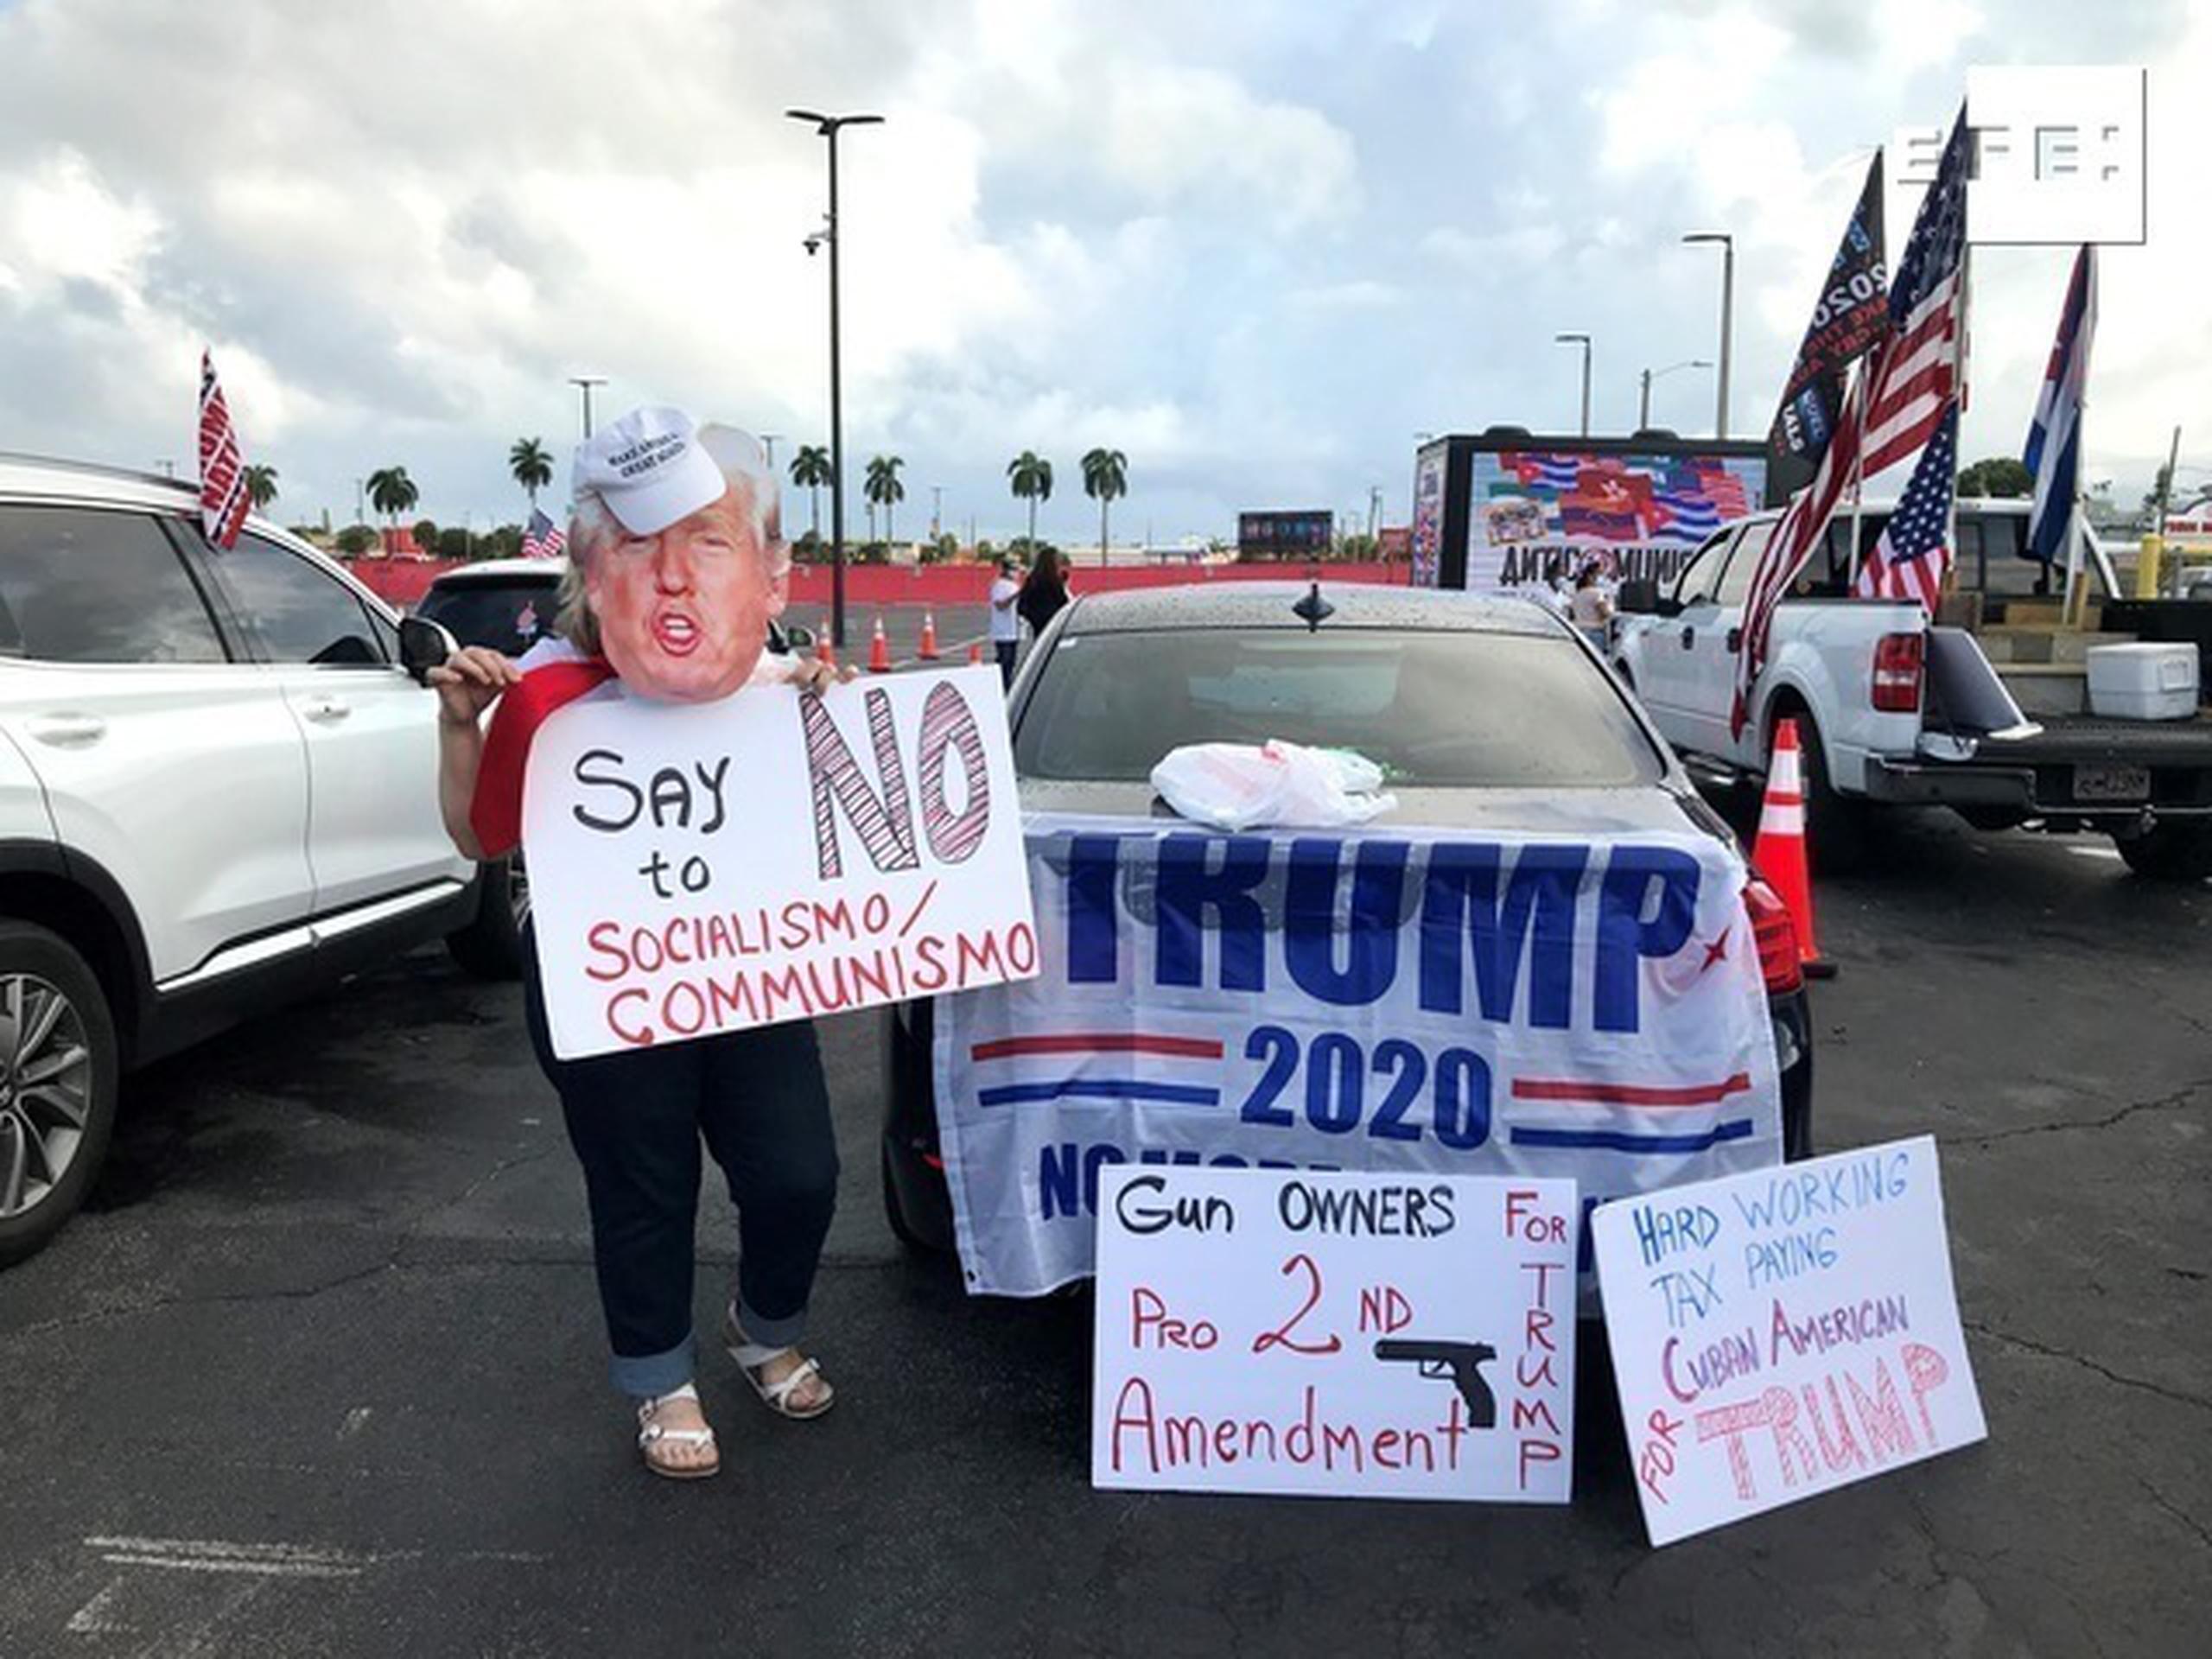 Unas personas sostienen carteles a favor del presidente Donald Trump mientras participan una manifestación multitudinaria contra el comunismo el 10 de octubre de 2020, en Miami, Florida (EEUU).